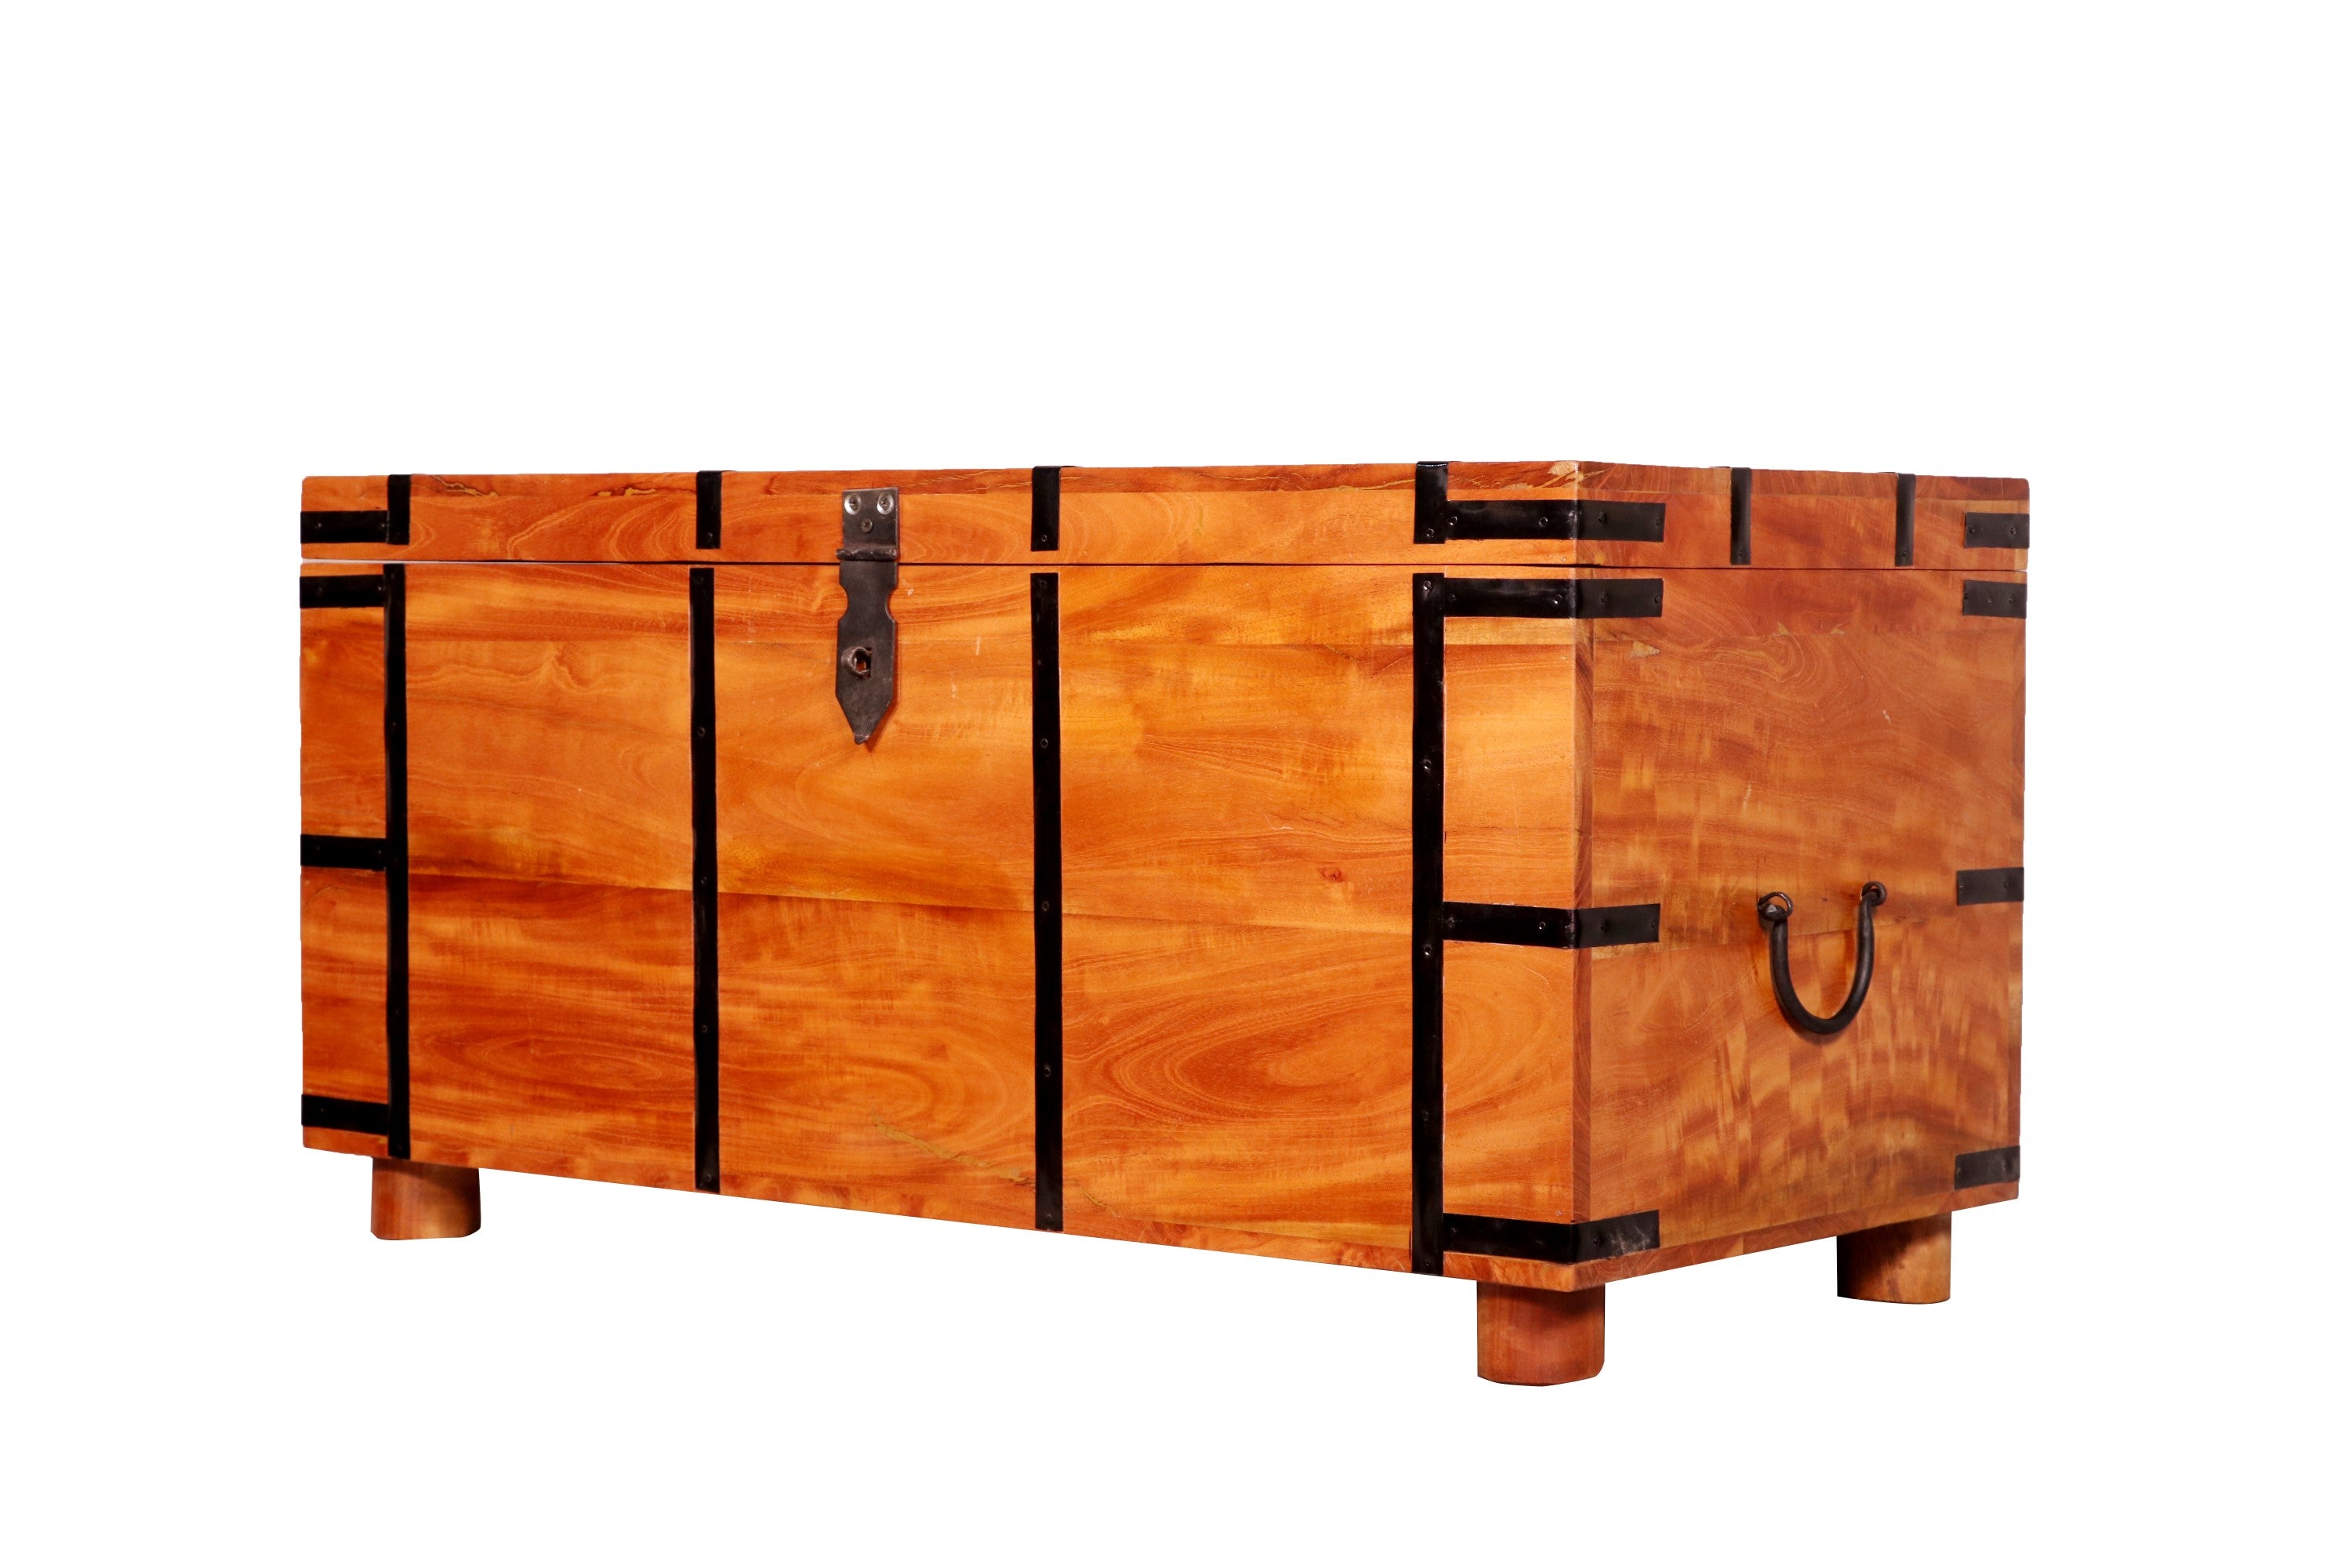 Classic Teak Wood Sanduk (Trunk) Wooden Box